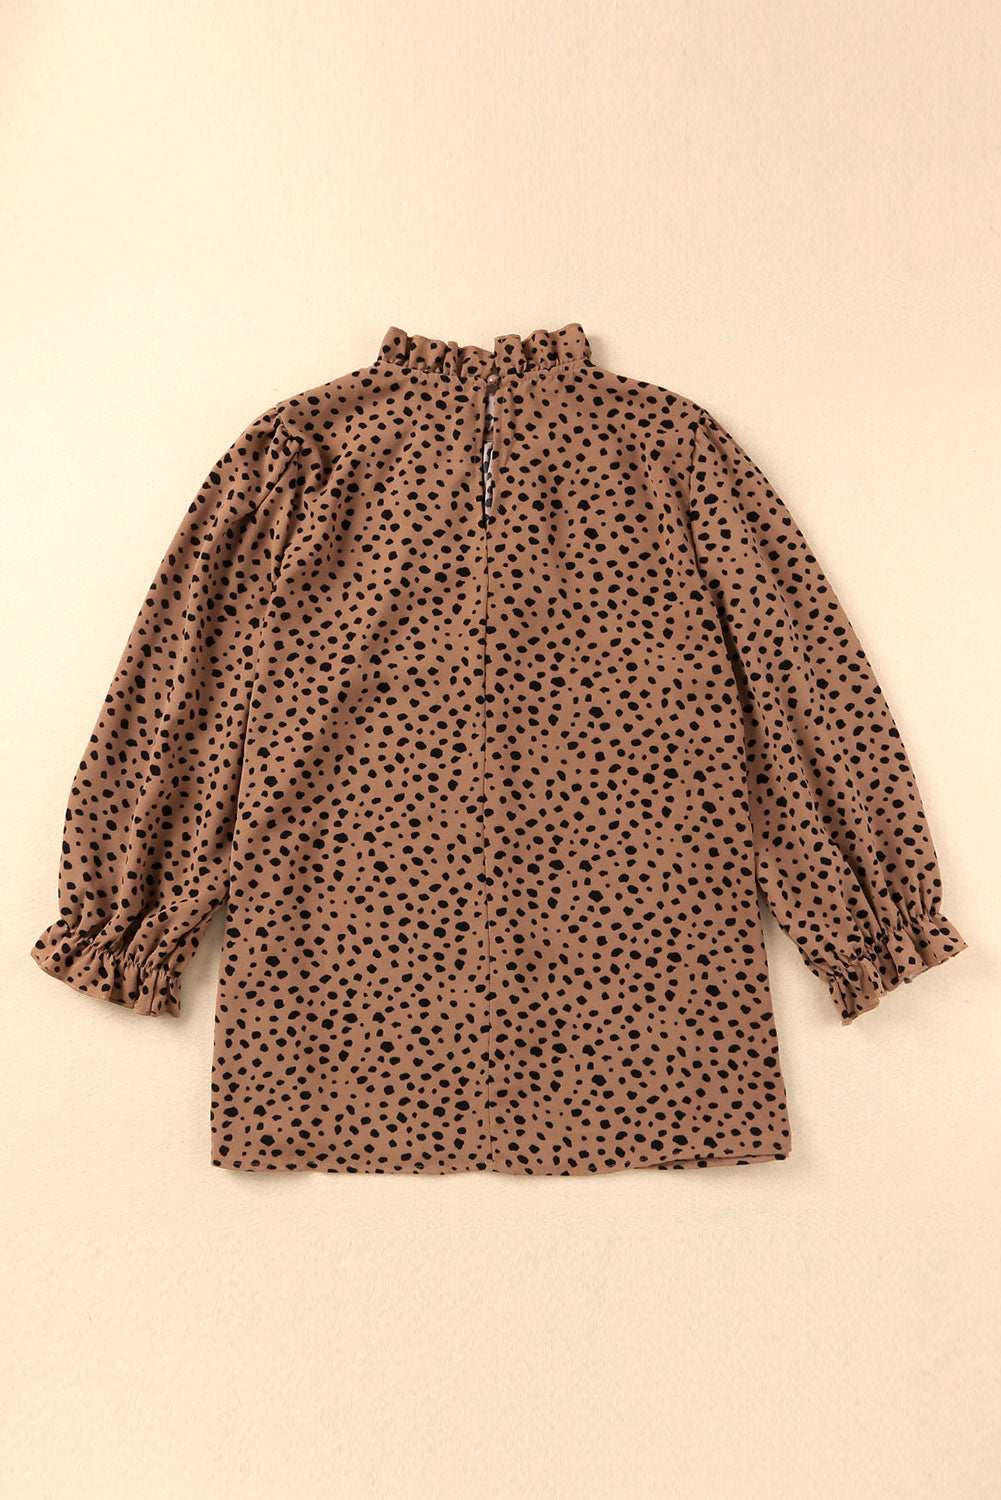 Rjava bluza v obliki geparda z naborki in 3/4 rokavi